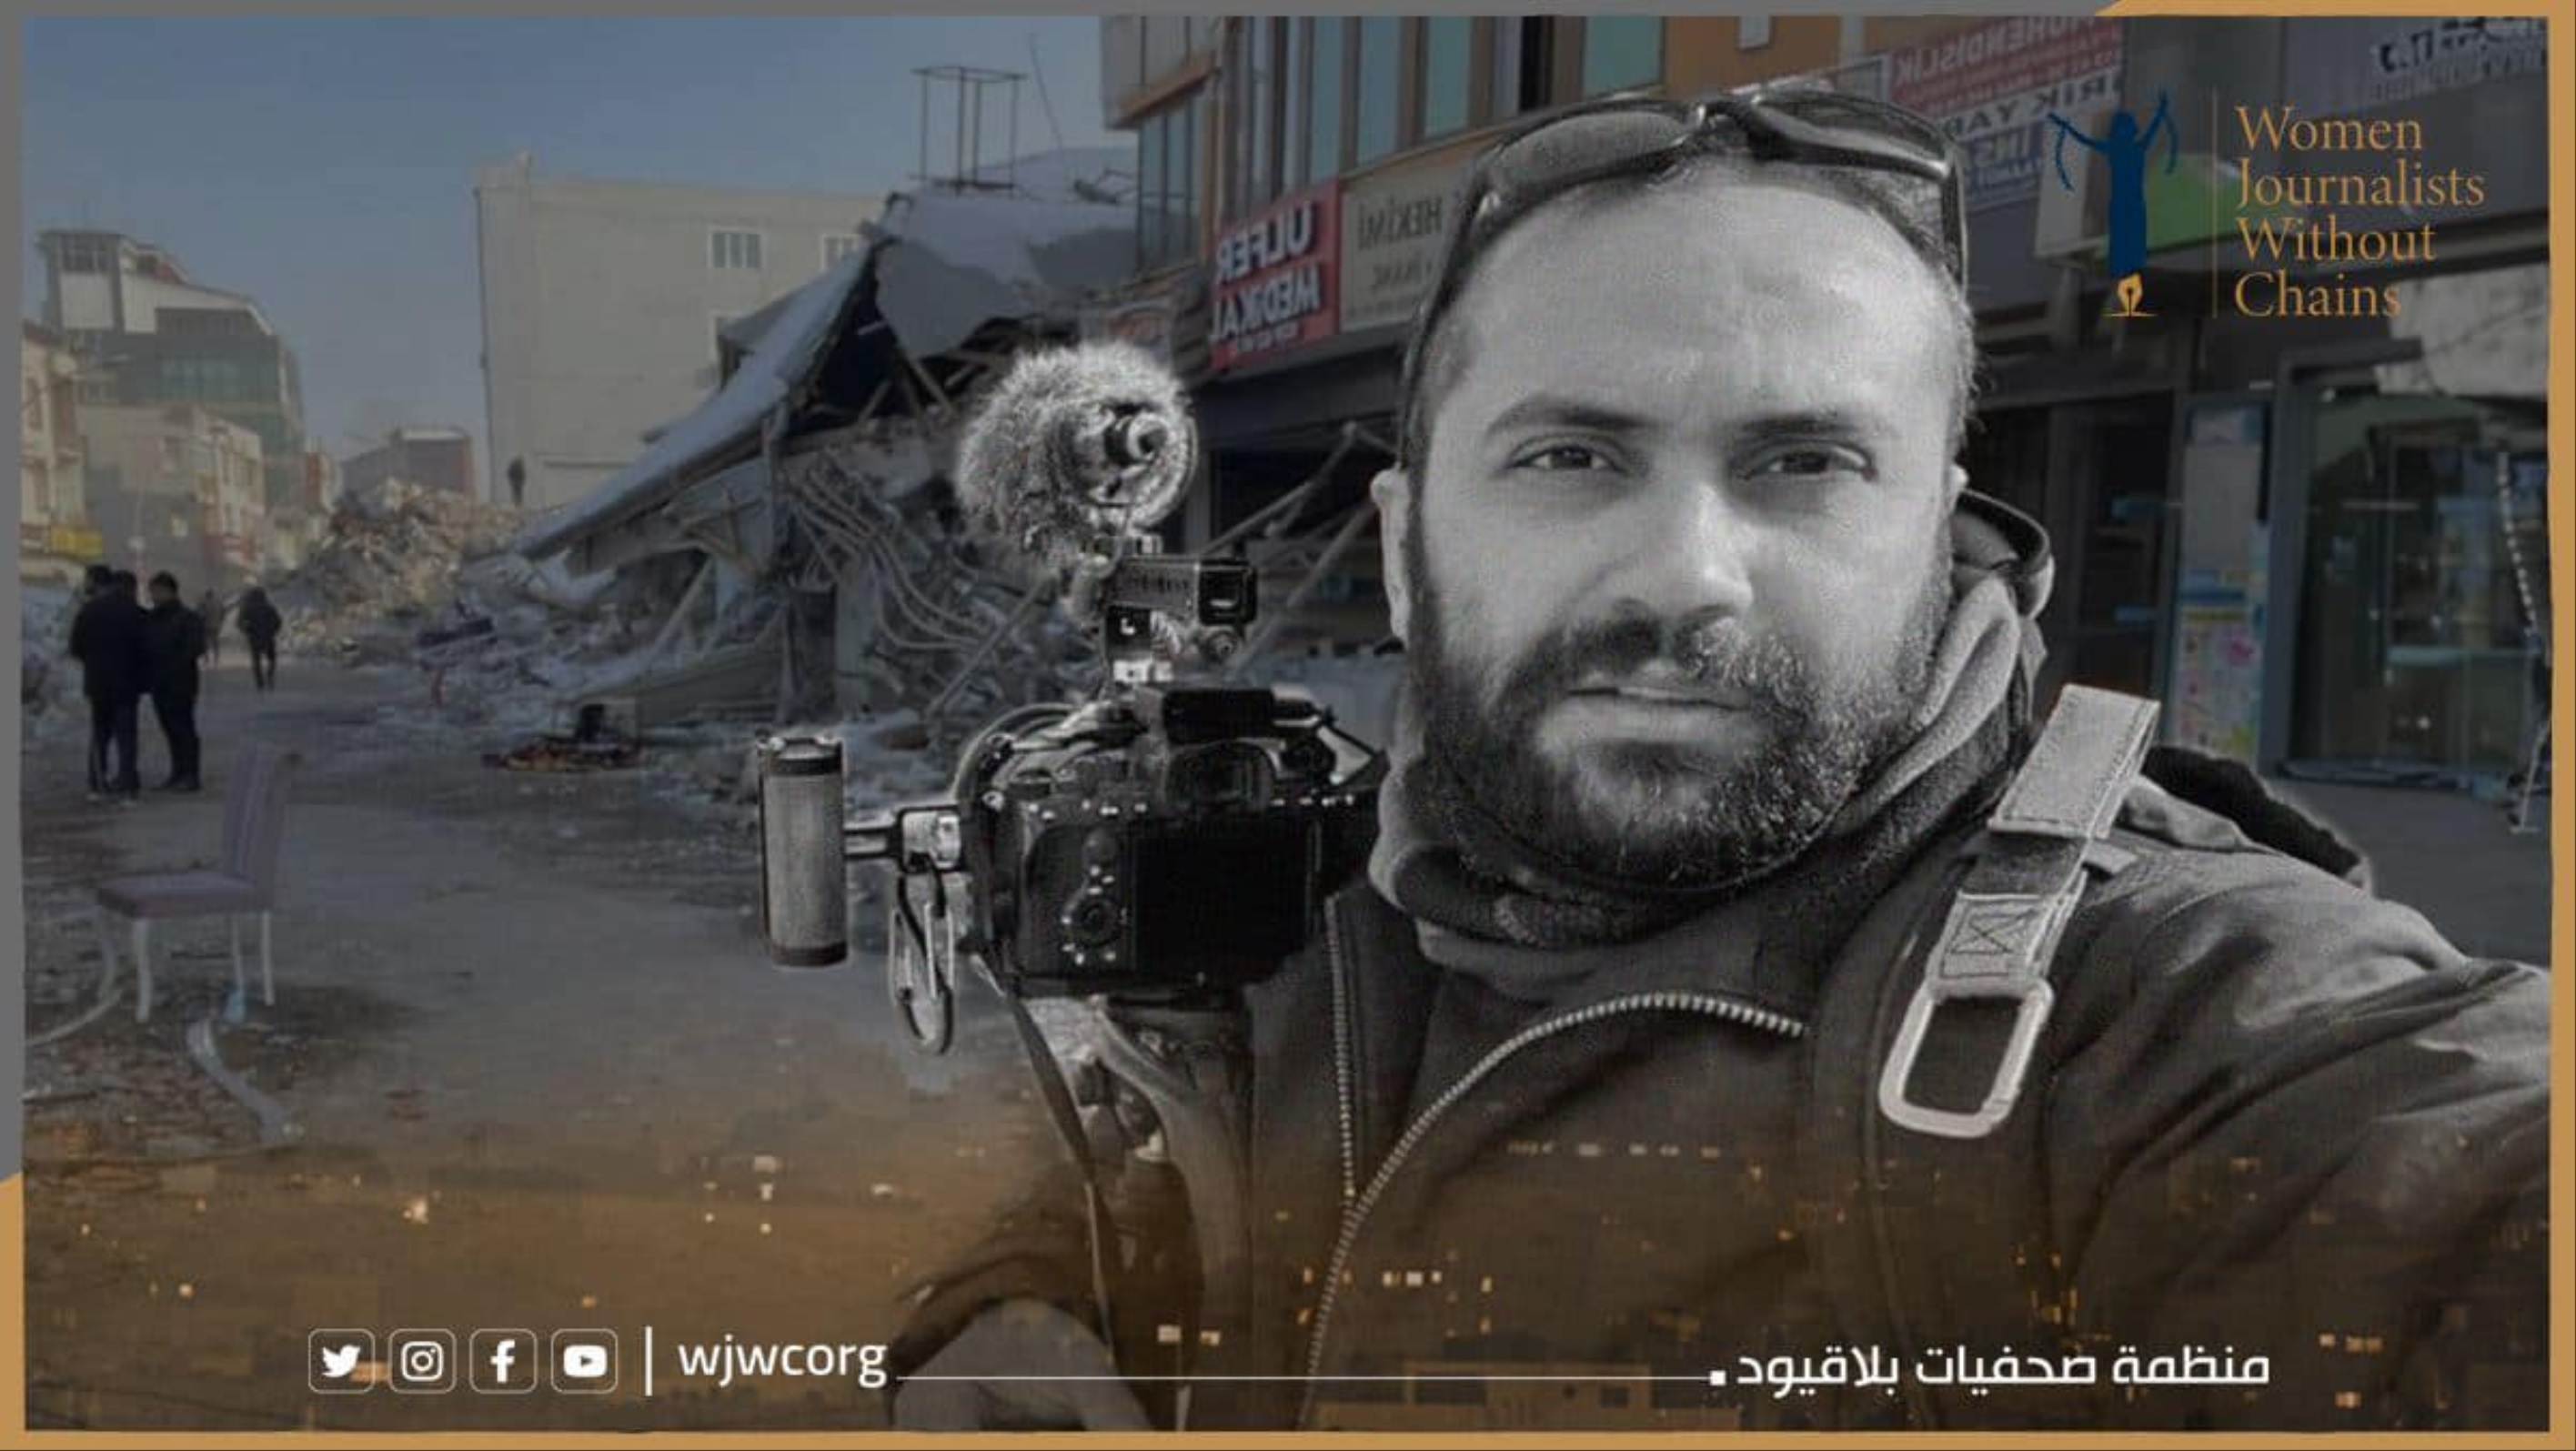 لبنان: مقتل صحفي وإصابة آخرين بقصف إسرائيلي